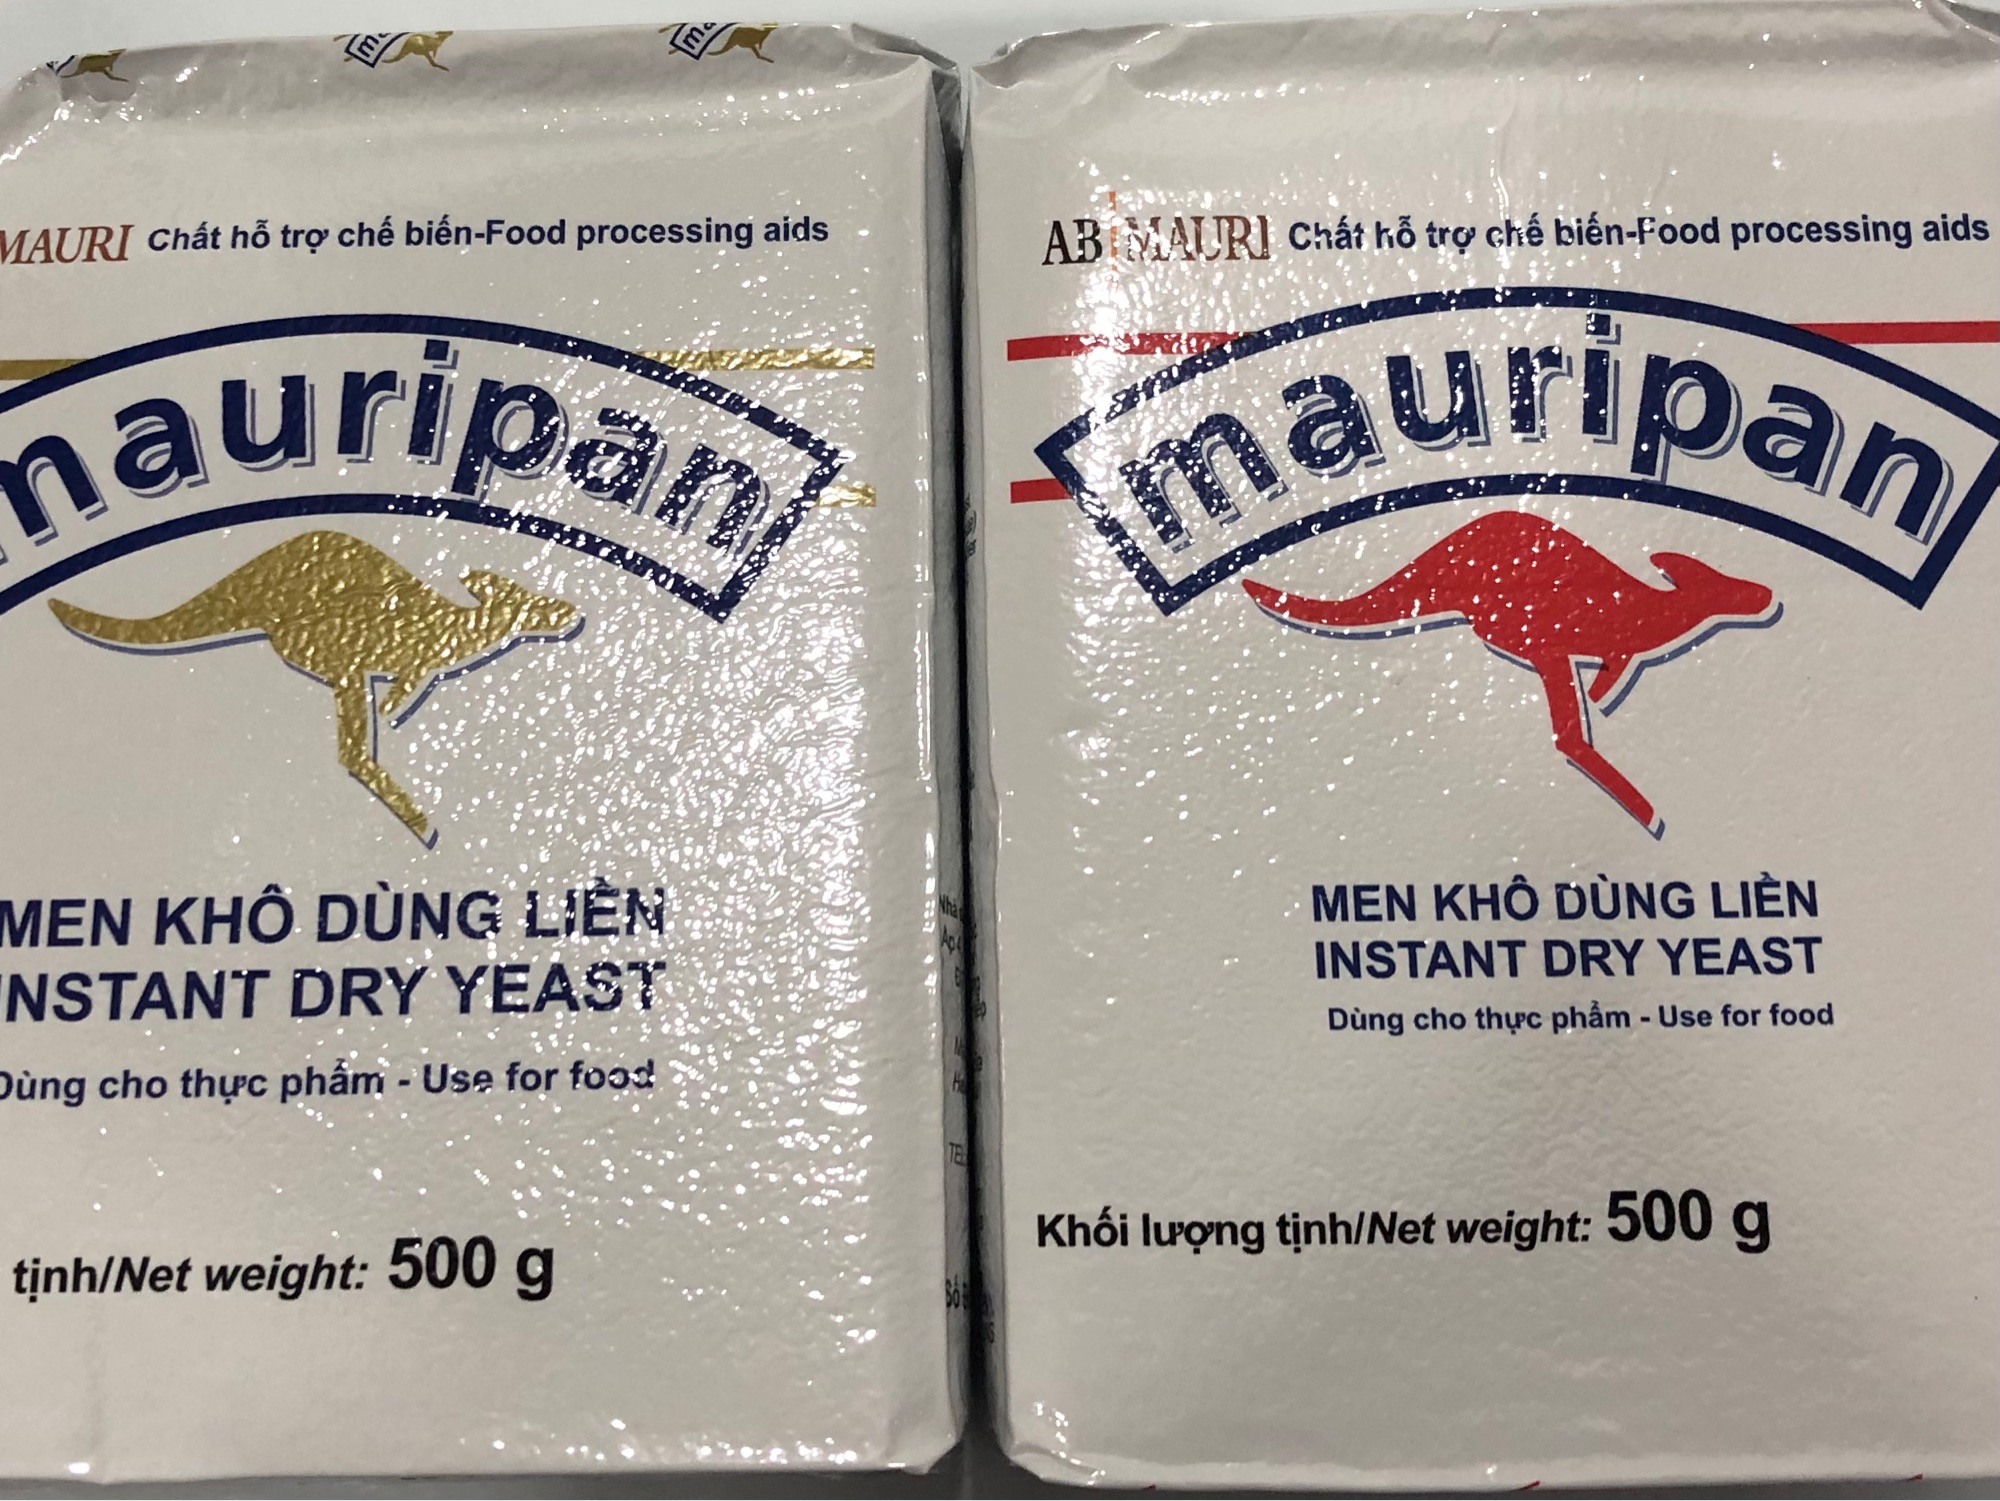 Men khô dùng liền Mauripan  Instant Dry Yeast